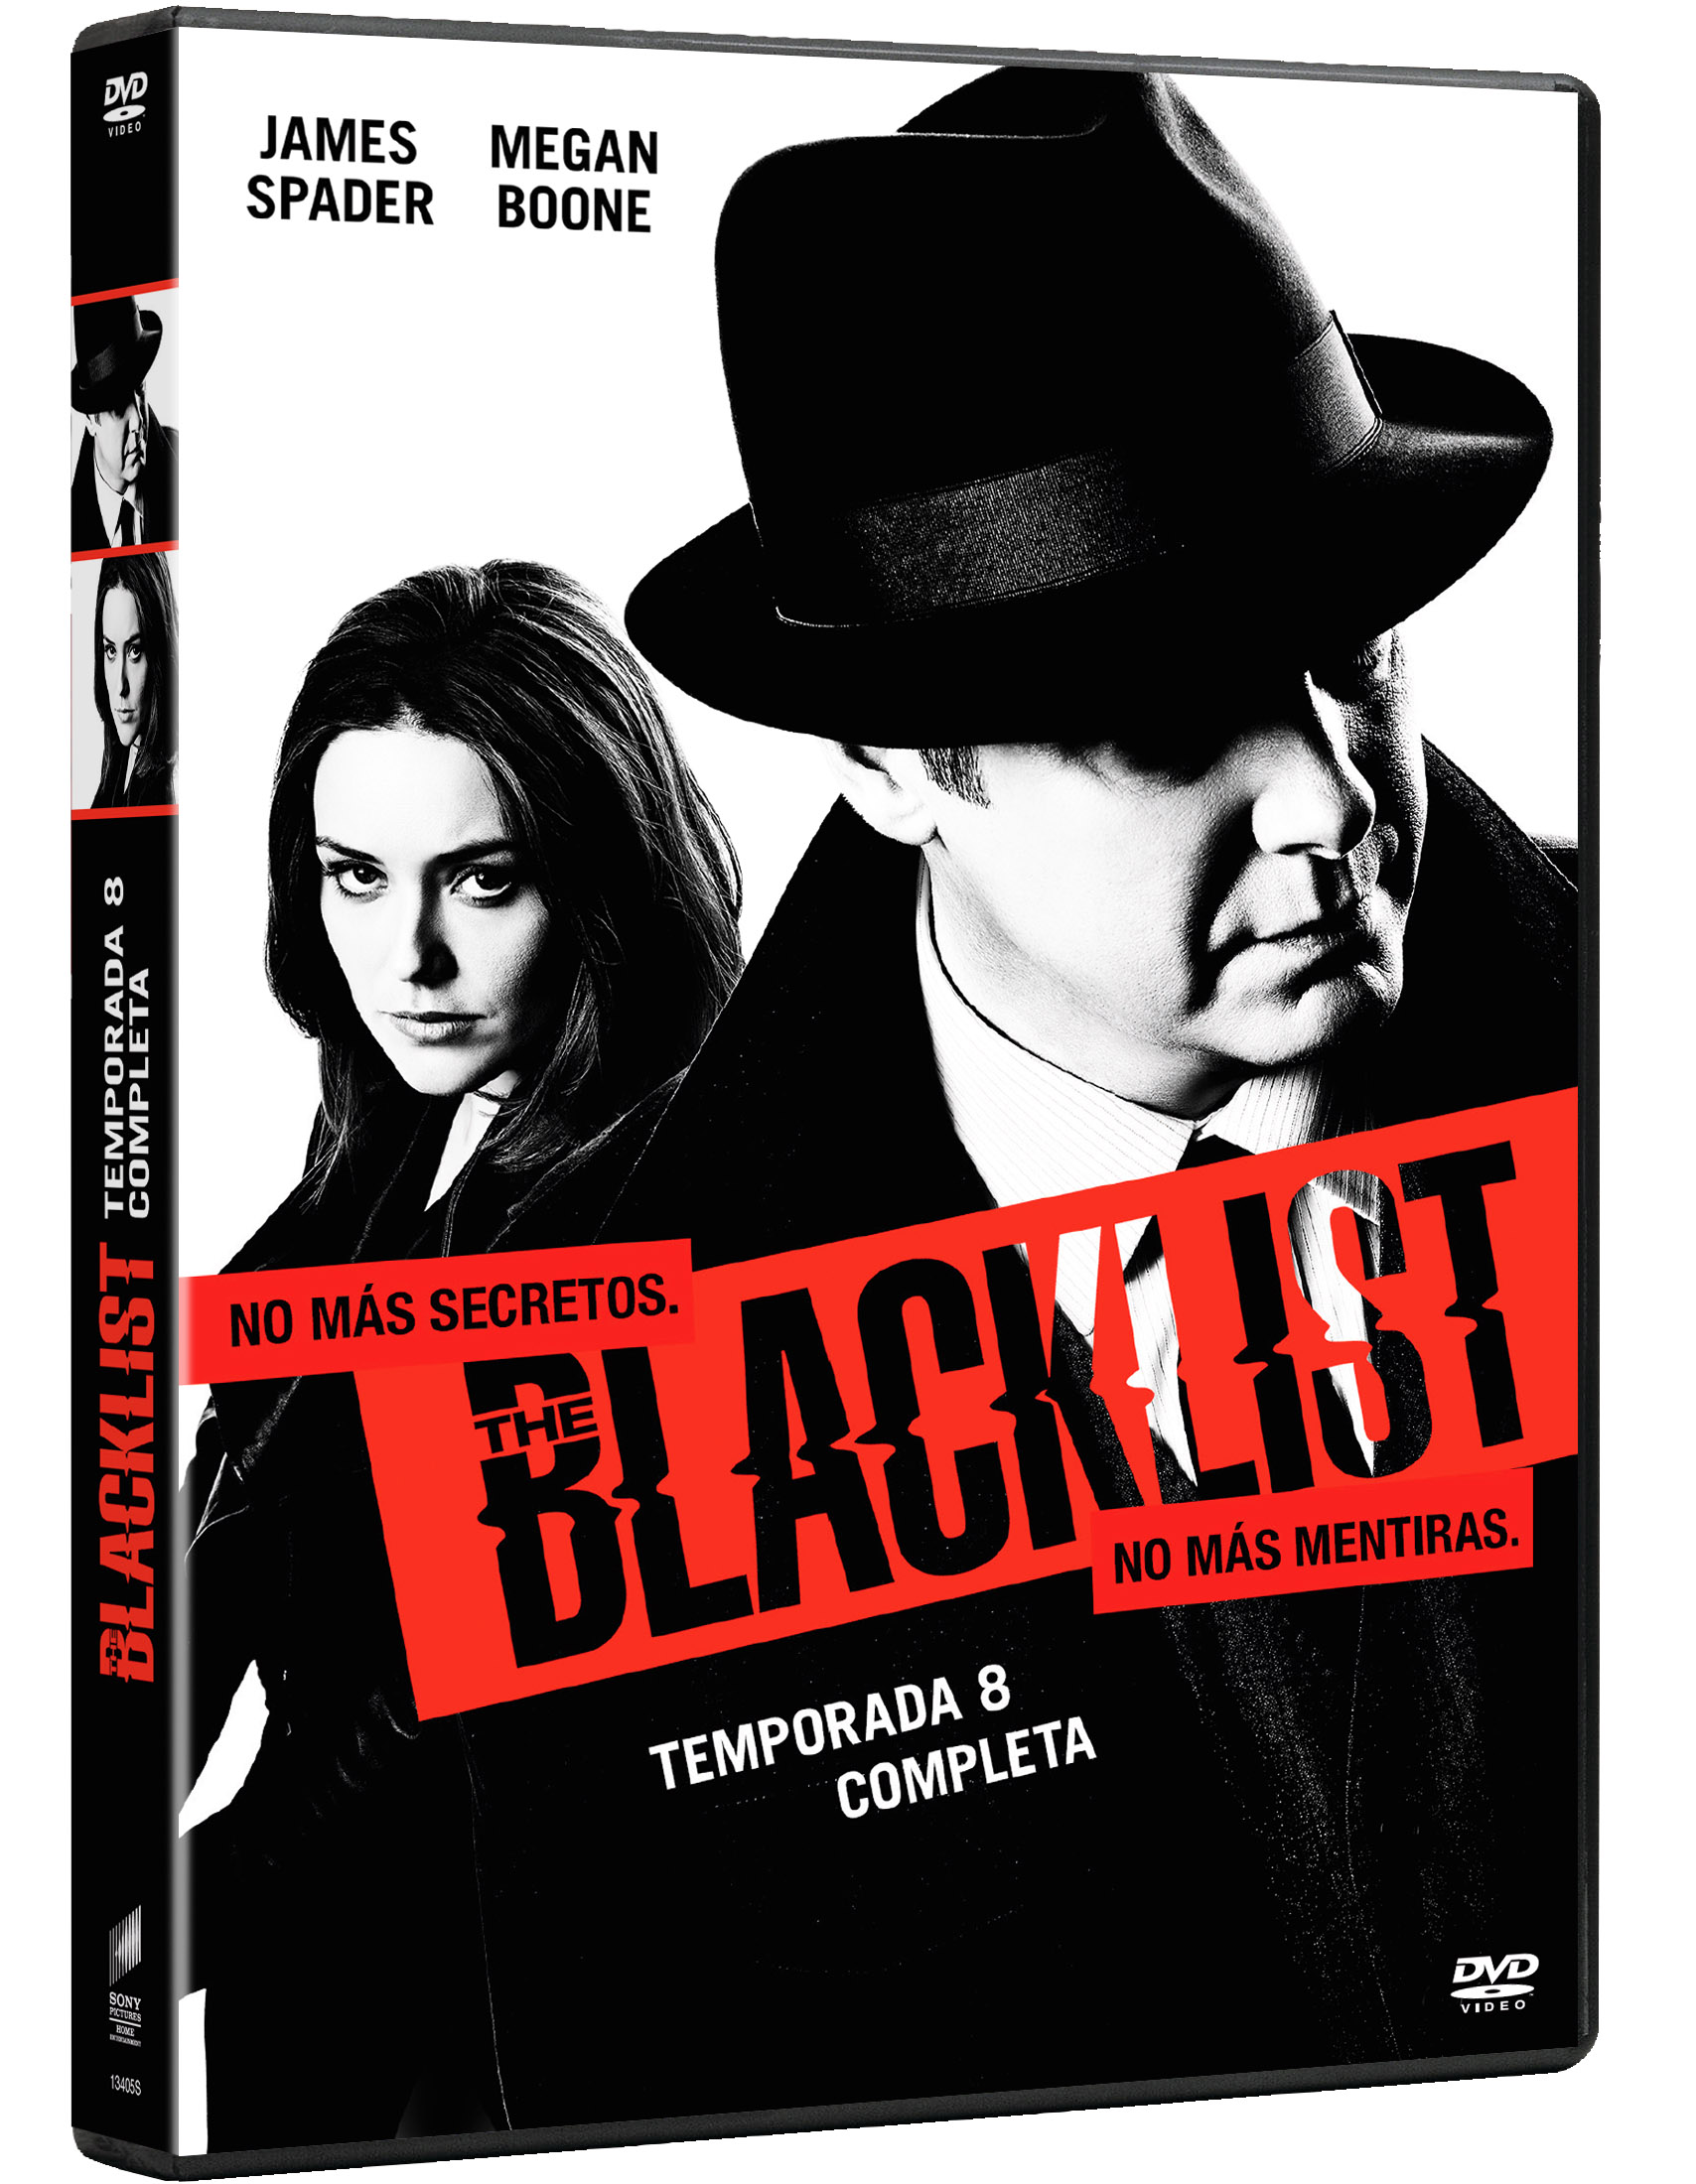 La octava temporada de 'The Blacklist' llega en DVD con escenas eliminadas, tomas falsas y un extra sobre el adiós de Liz